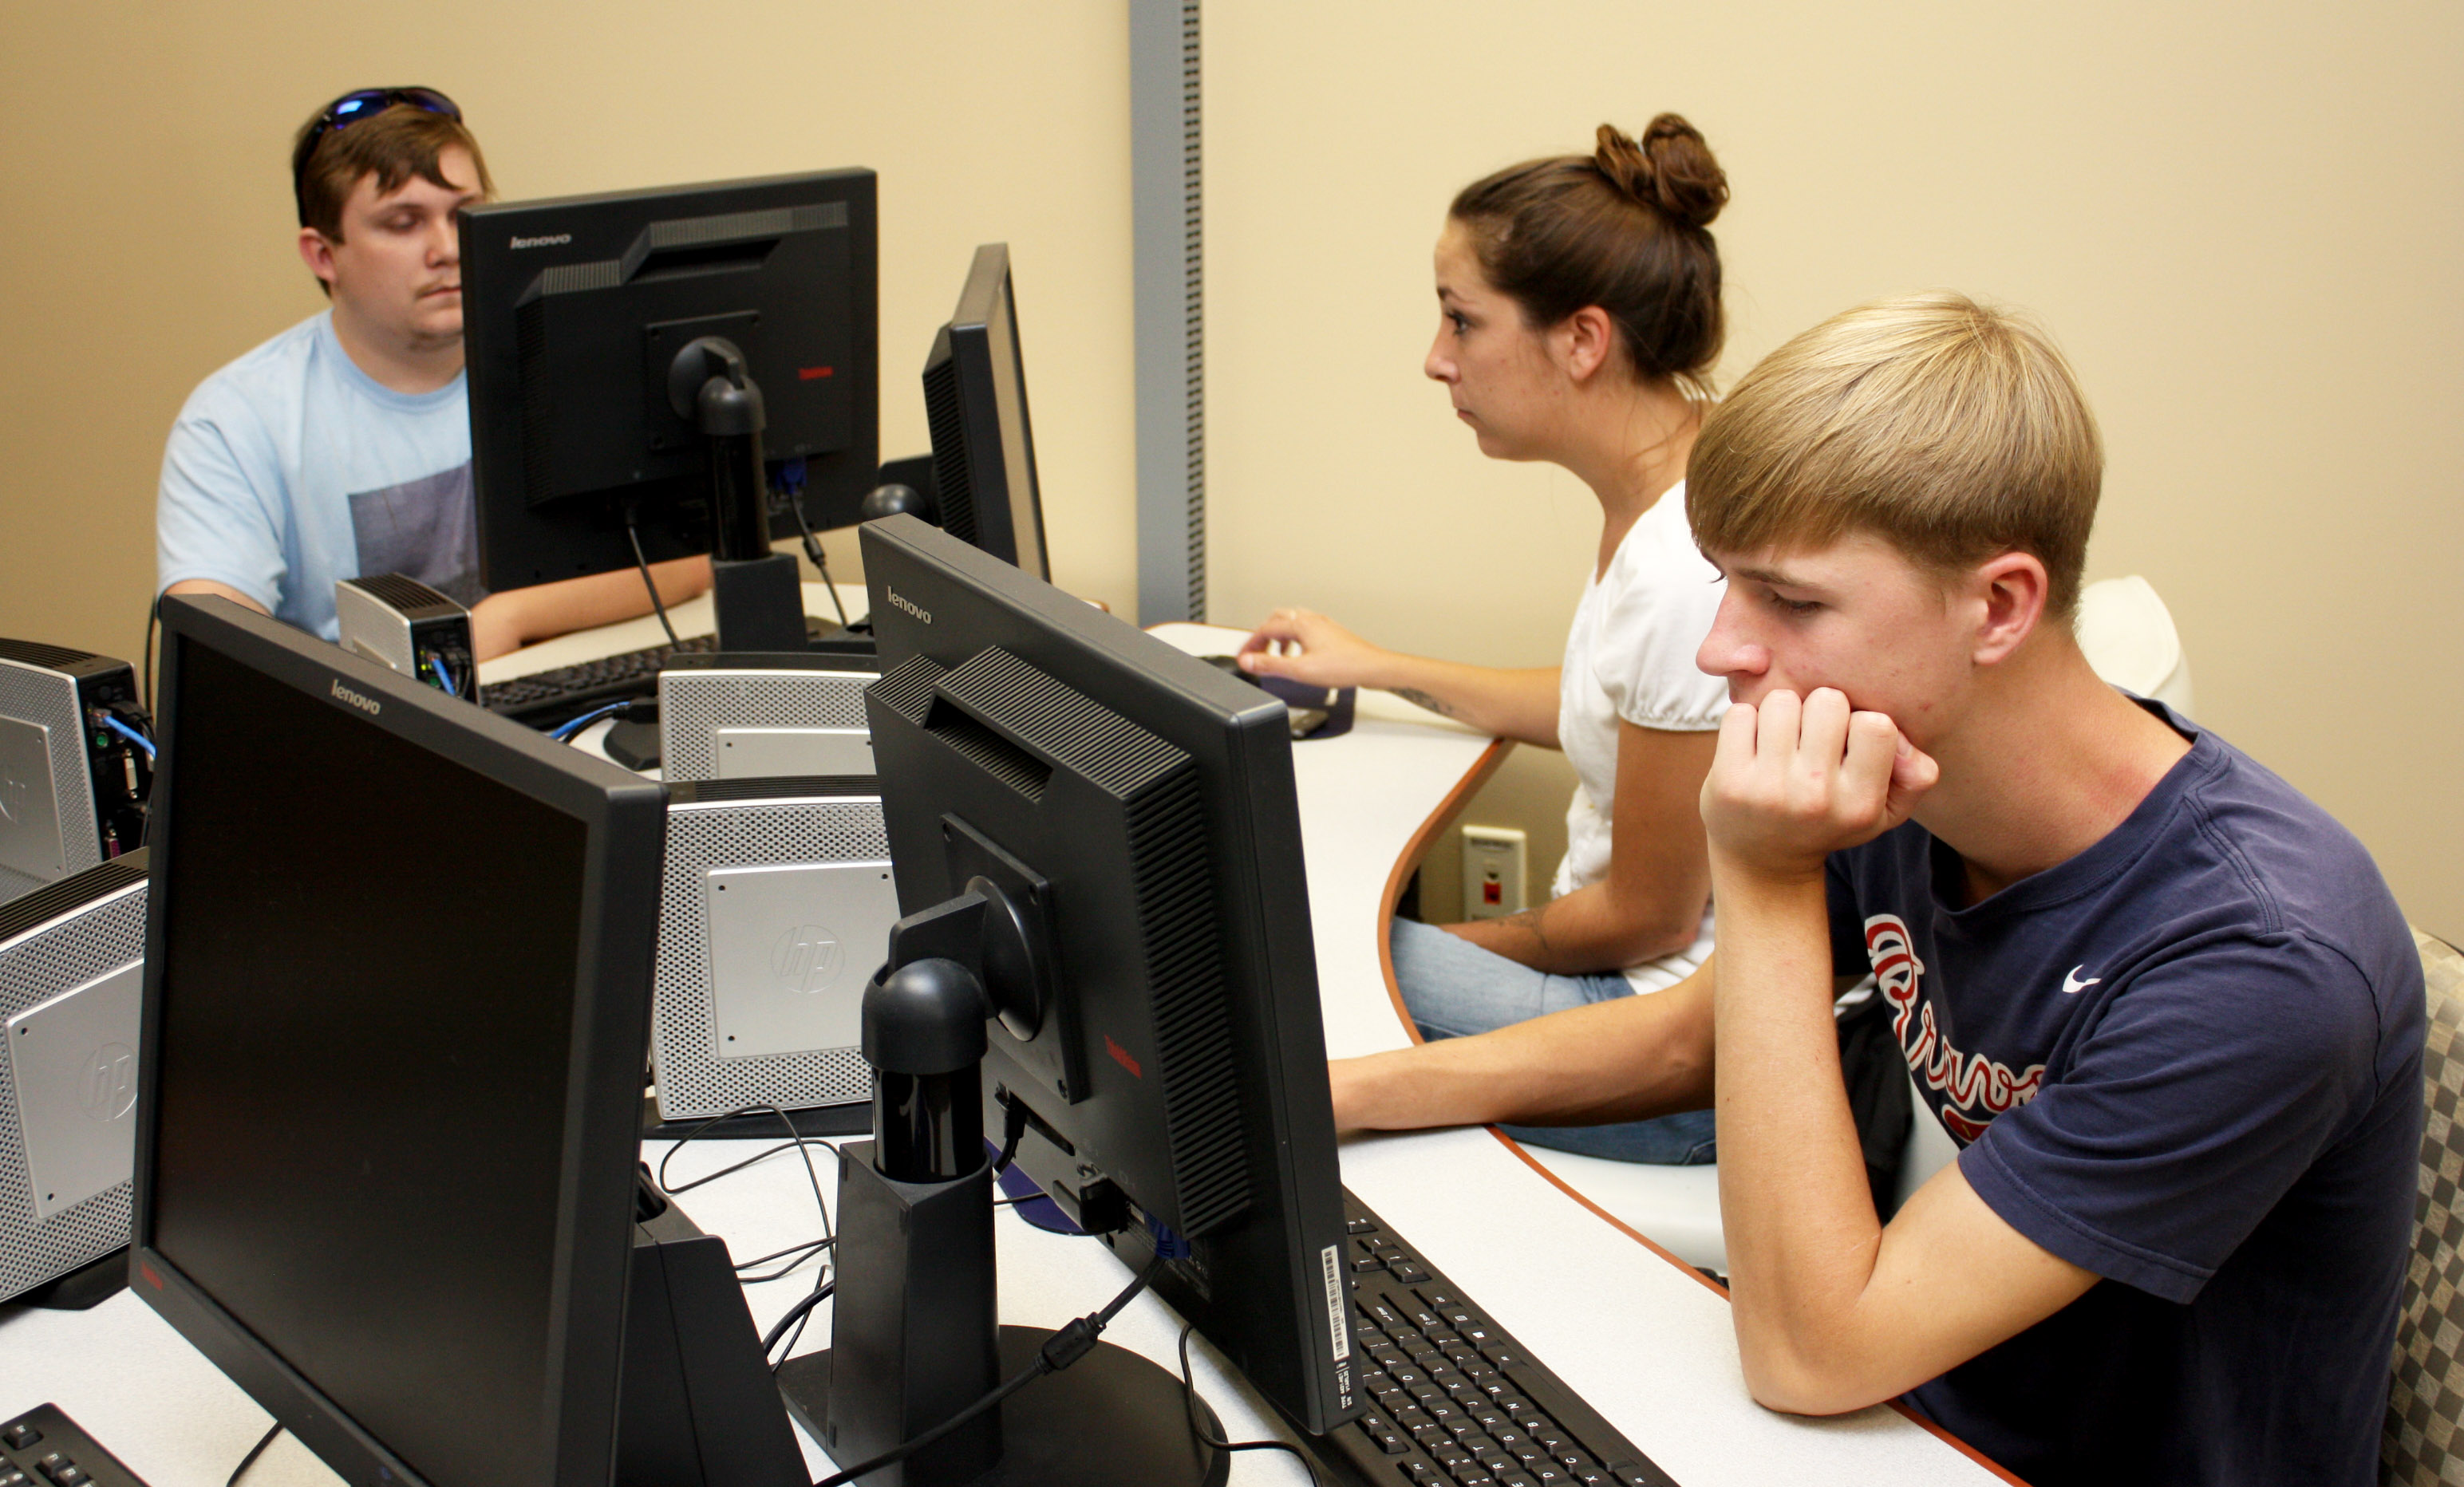 Three students looking at computers.